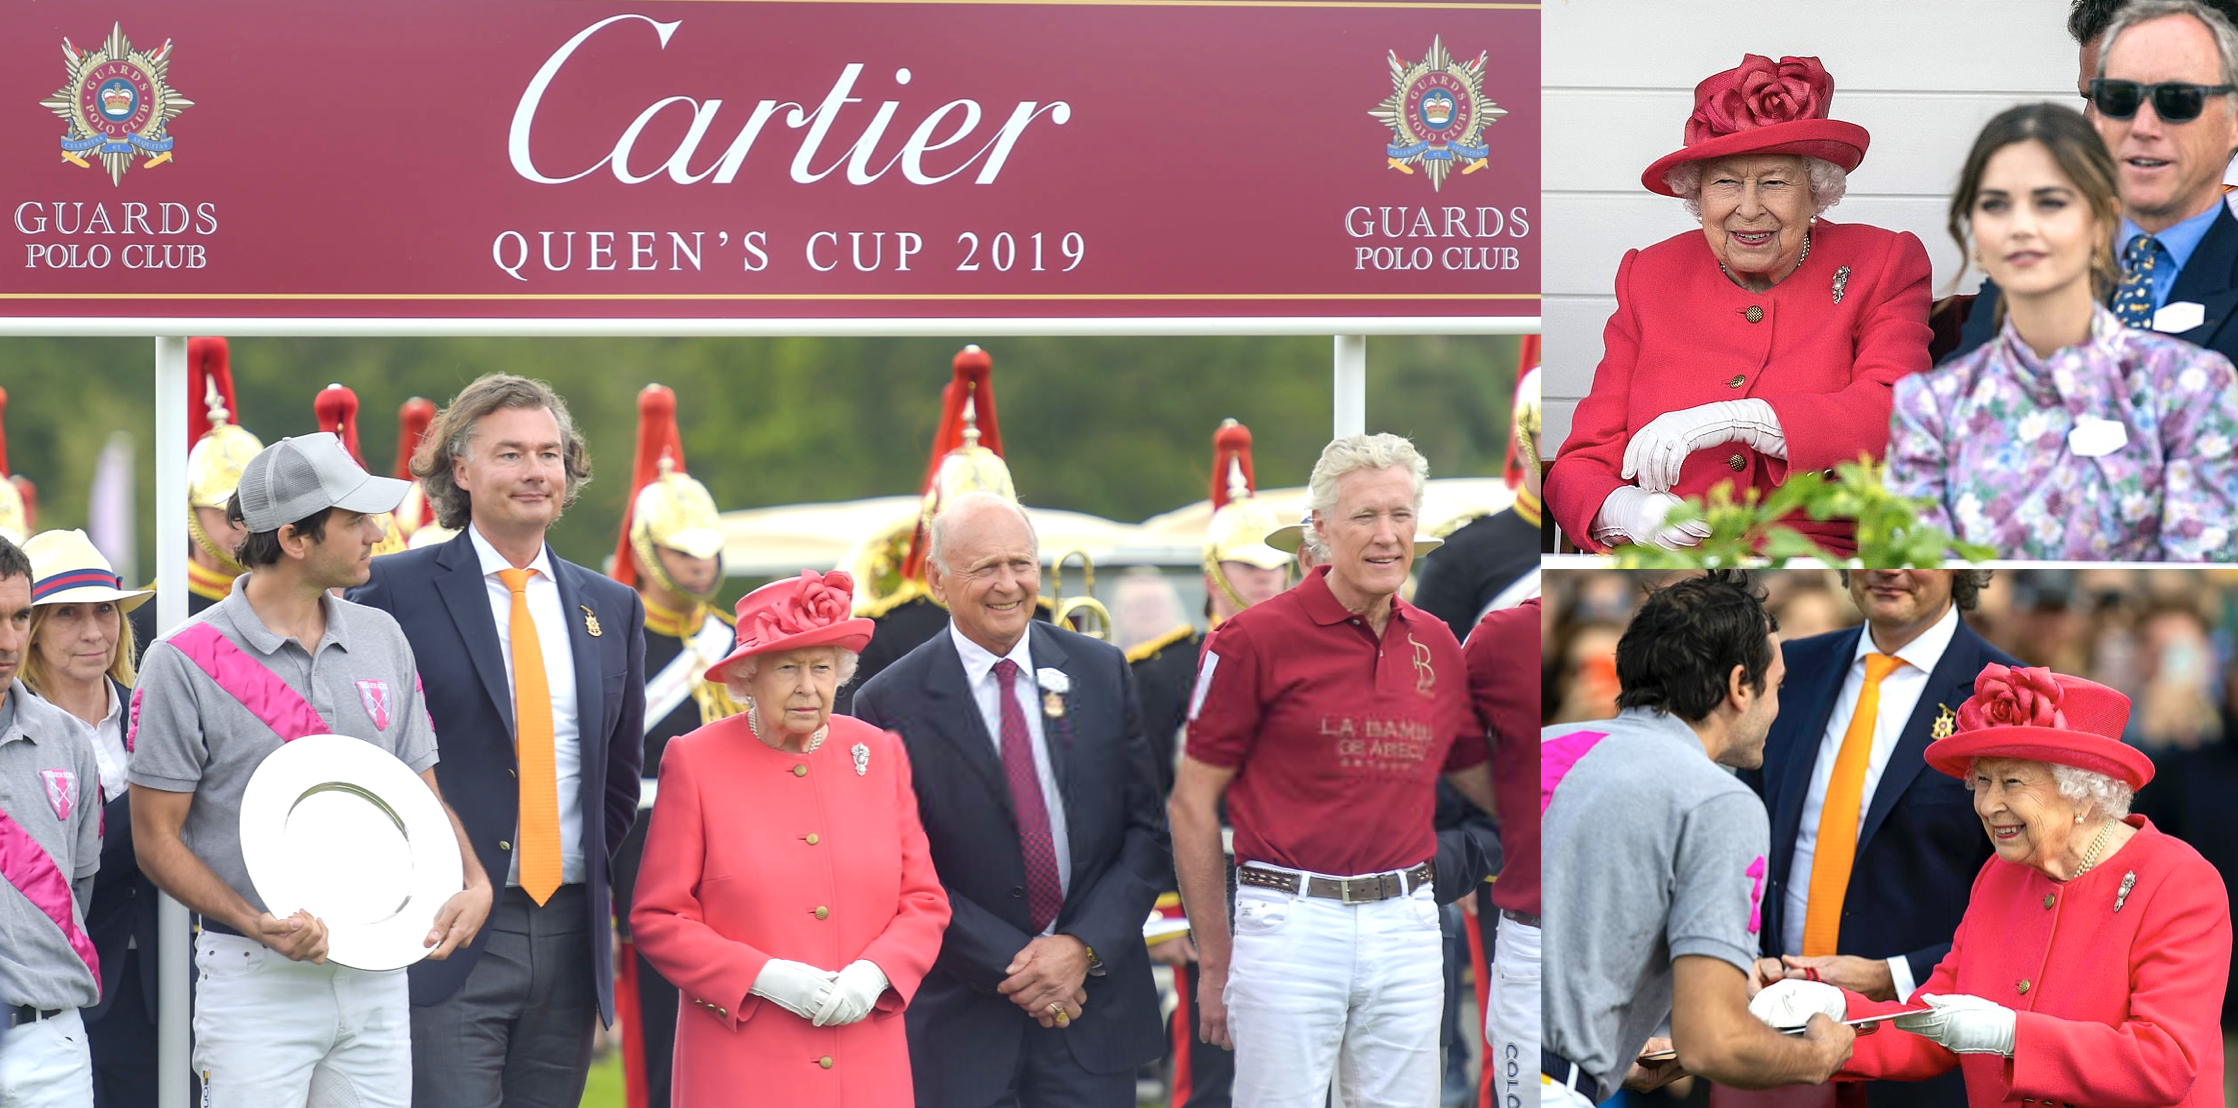 the cartier queen's cup polo final